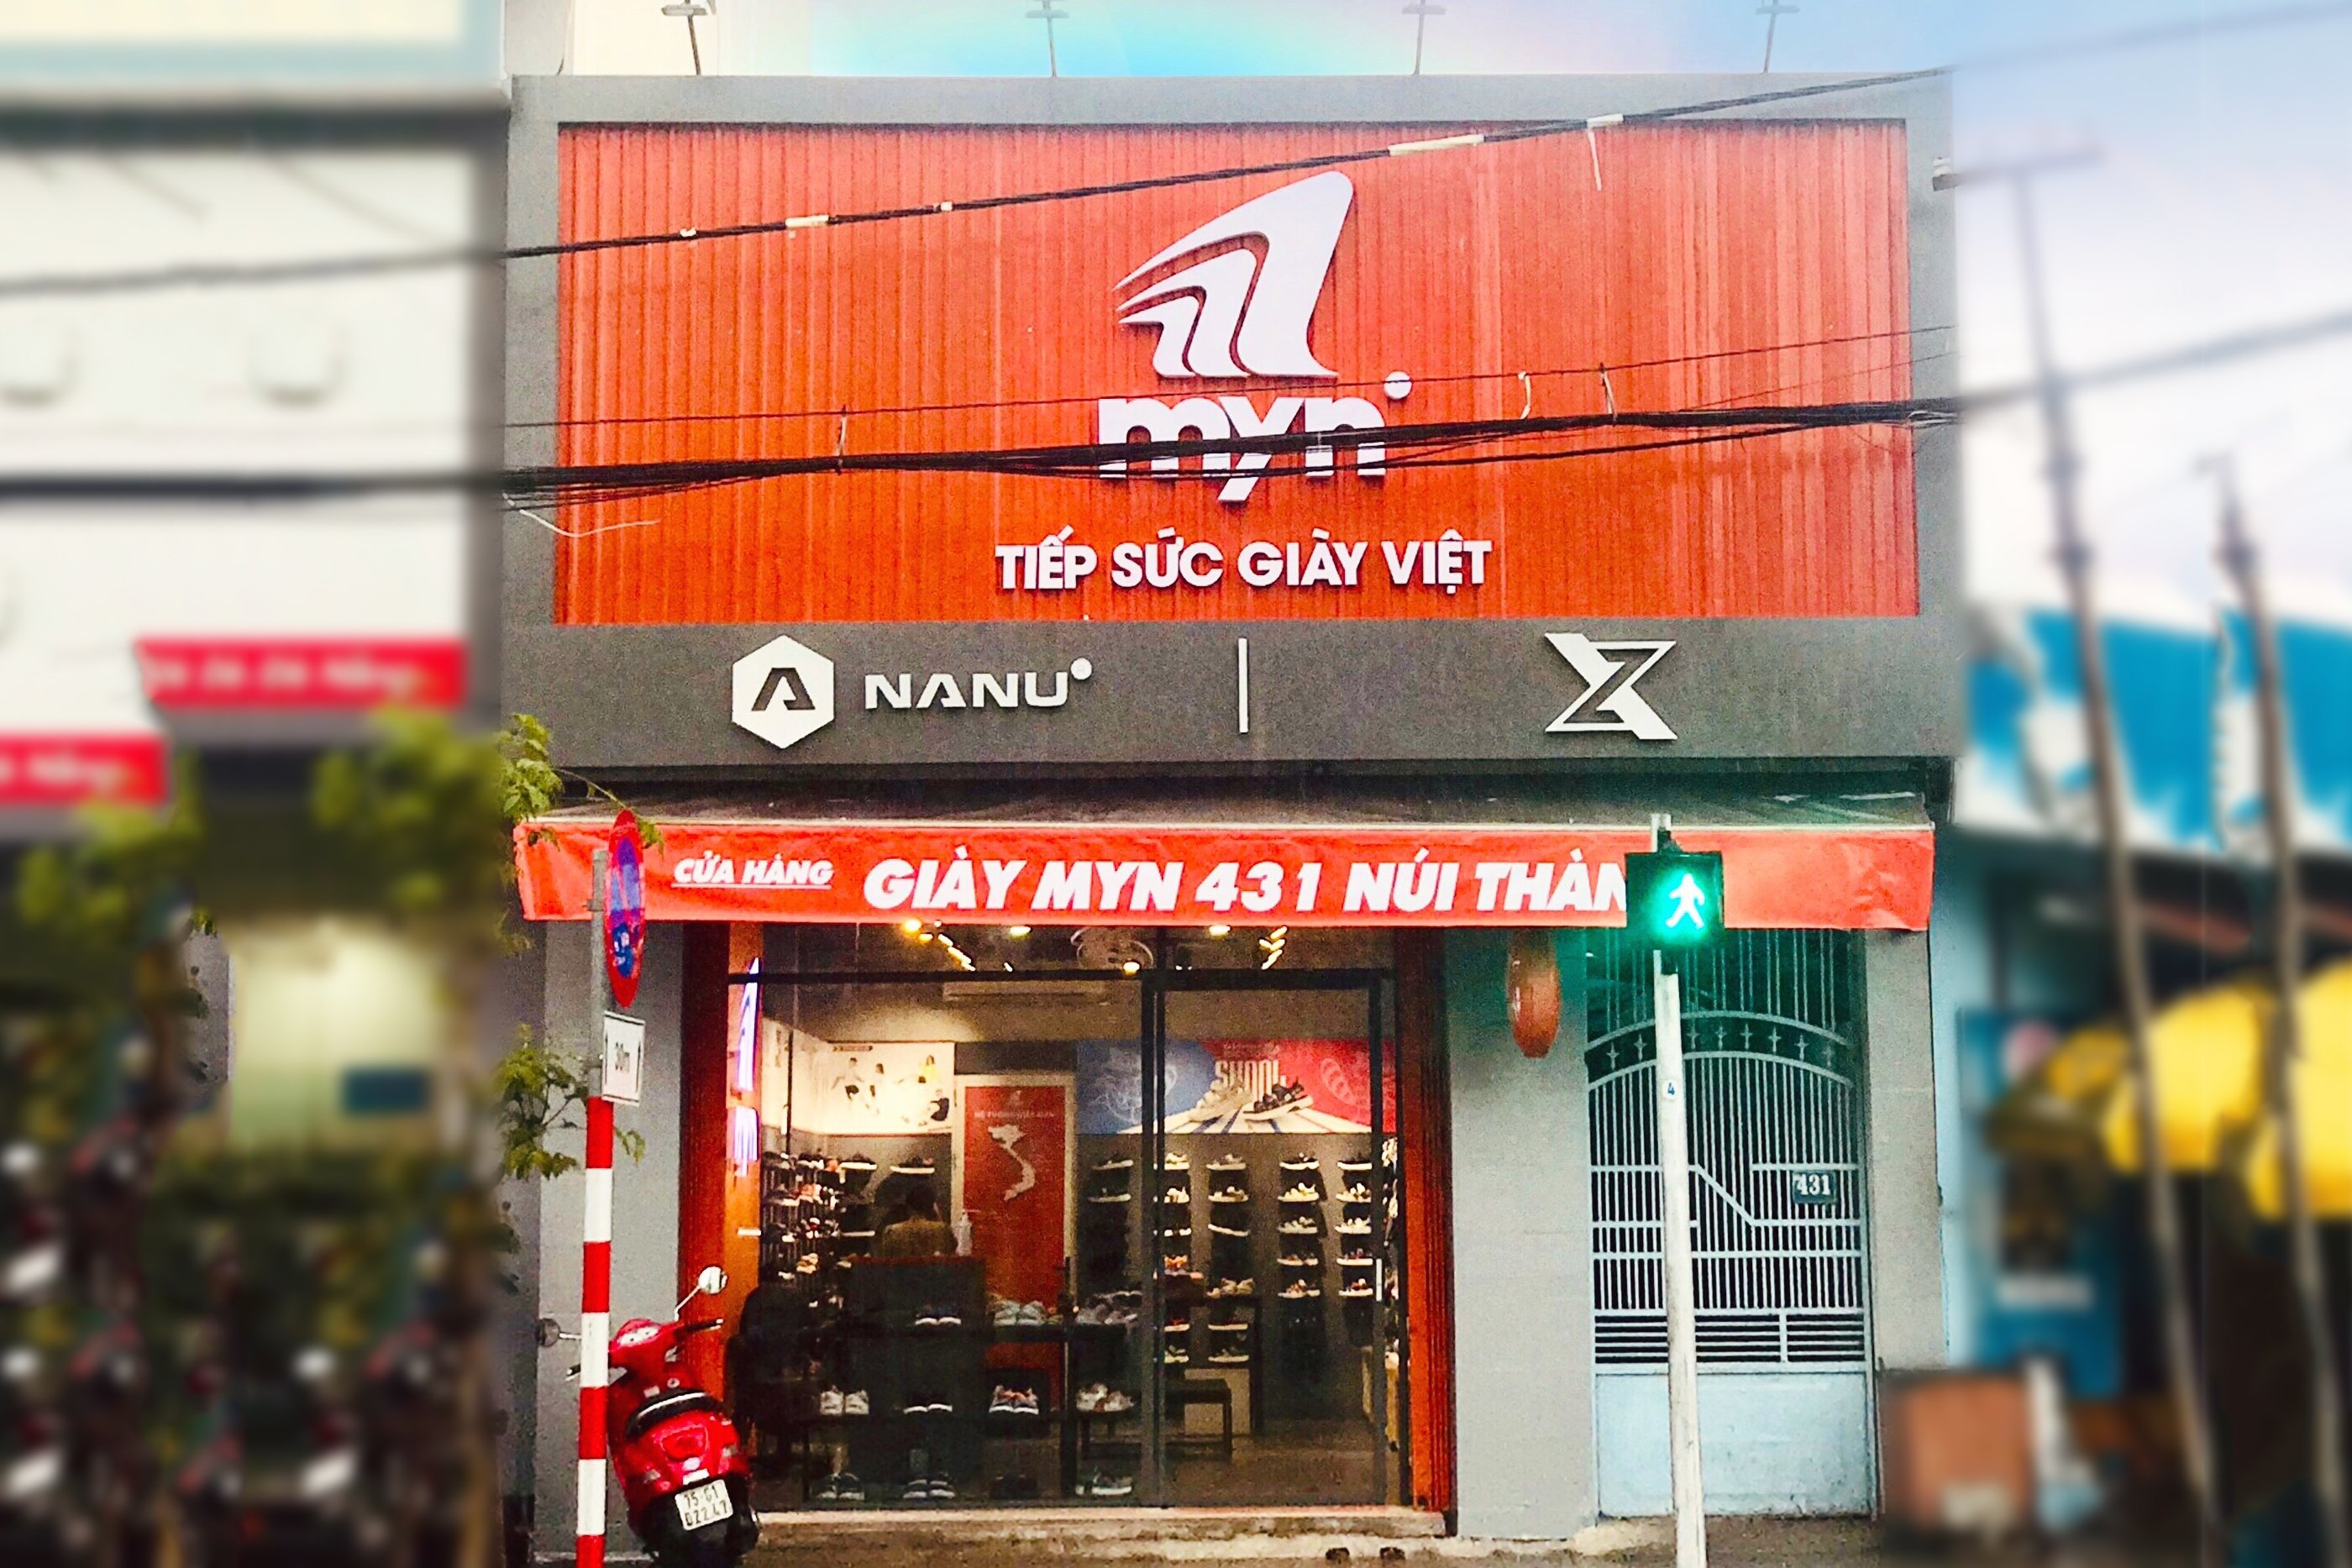 Myn Shop: 431 Núi Thành - Q. Hải Châu - Đà Nẵng